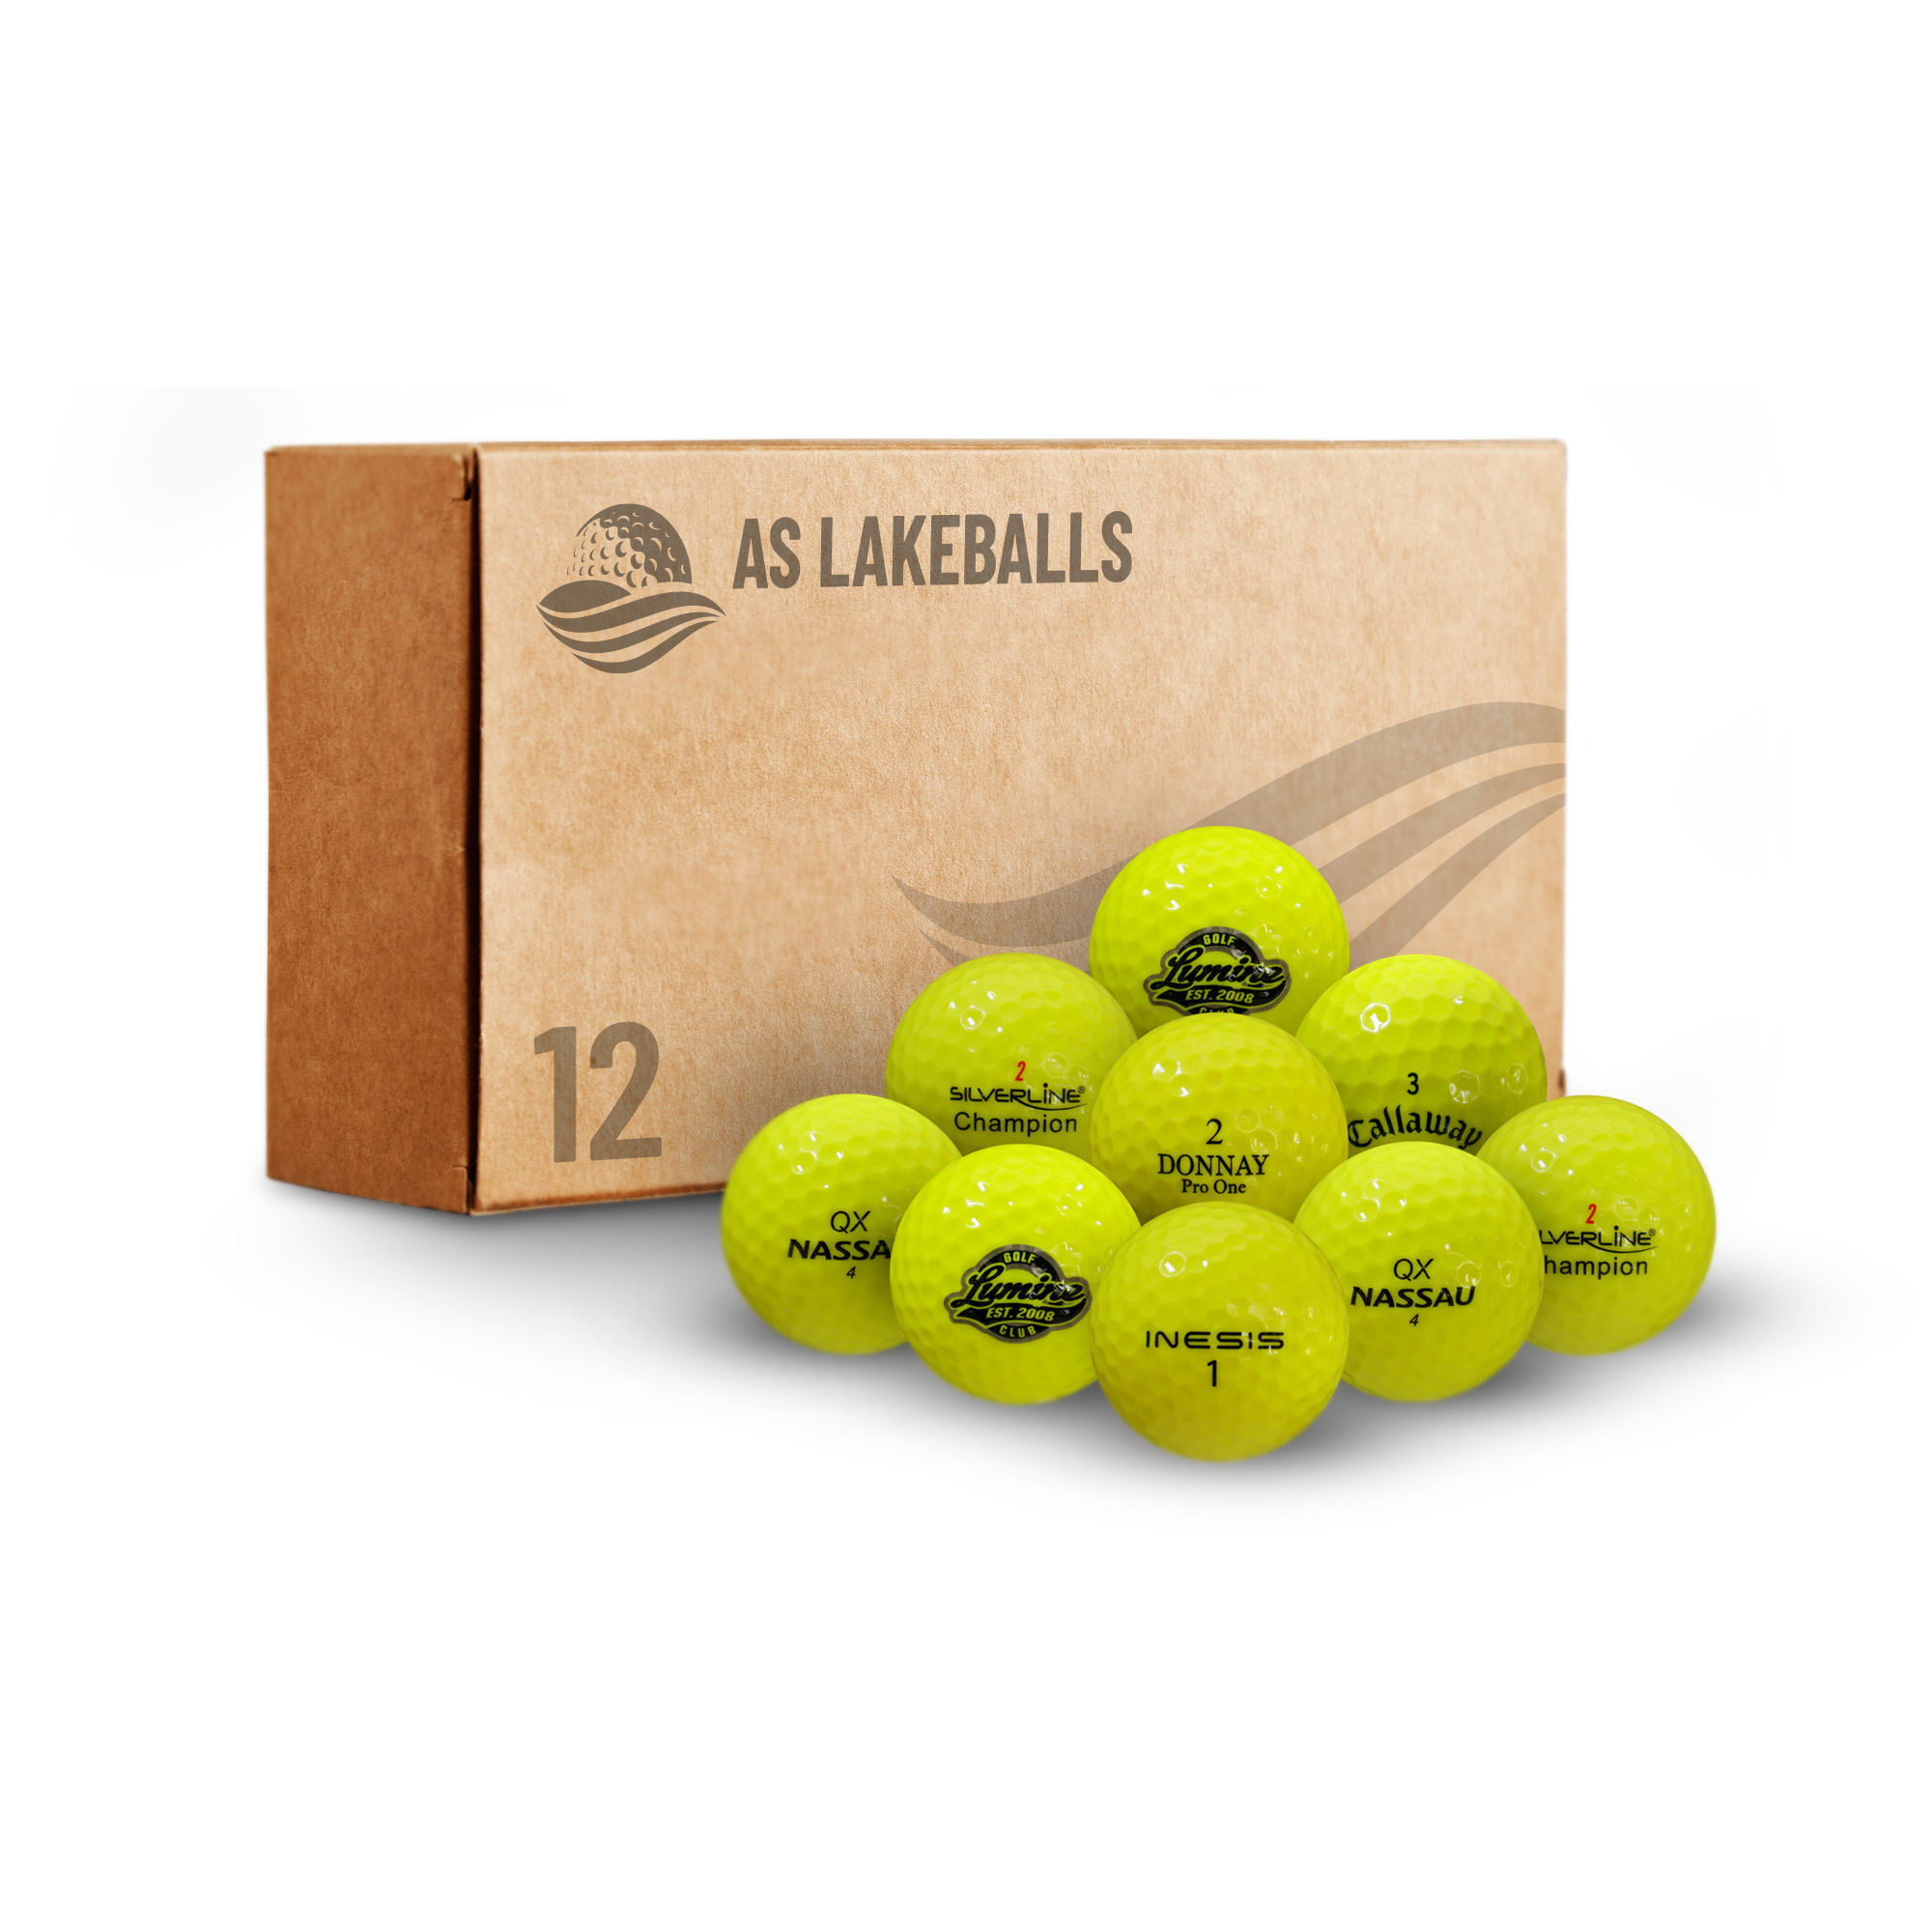 12 Stück Mixbälle leuchtgelb/gelb AAAA Lakeballs